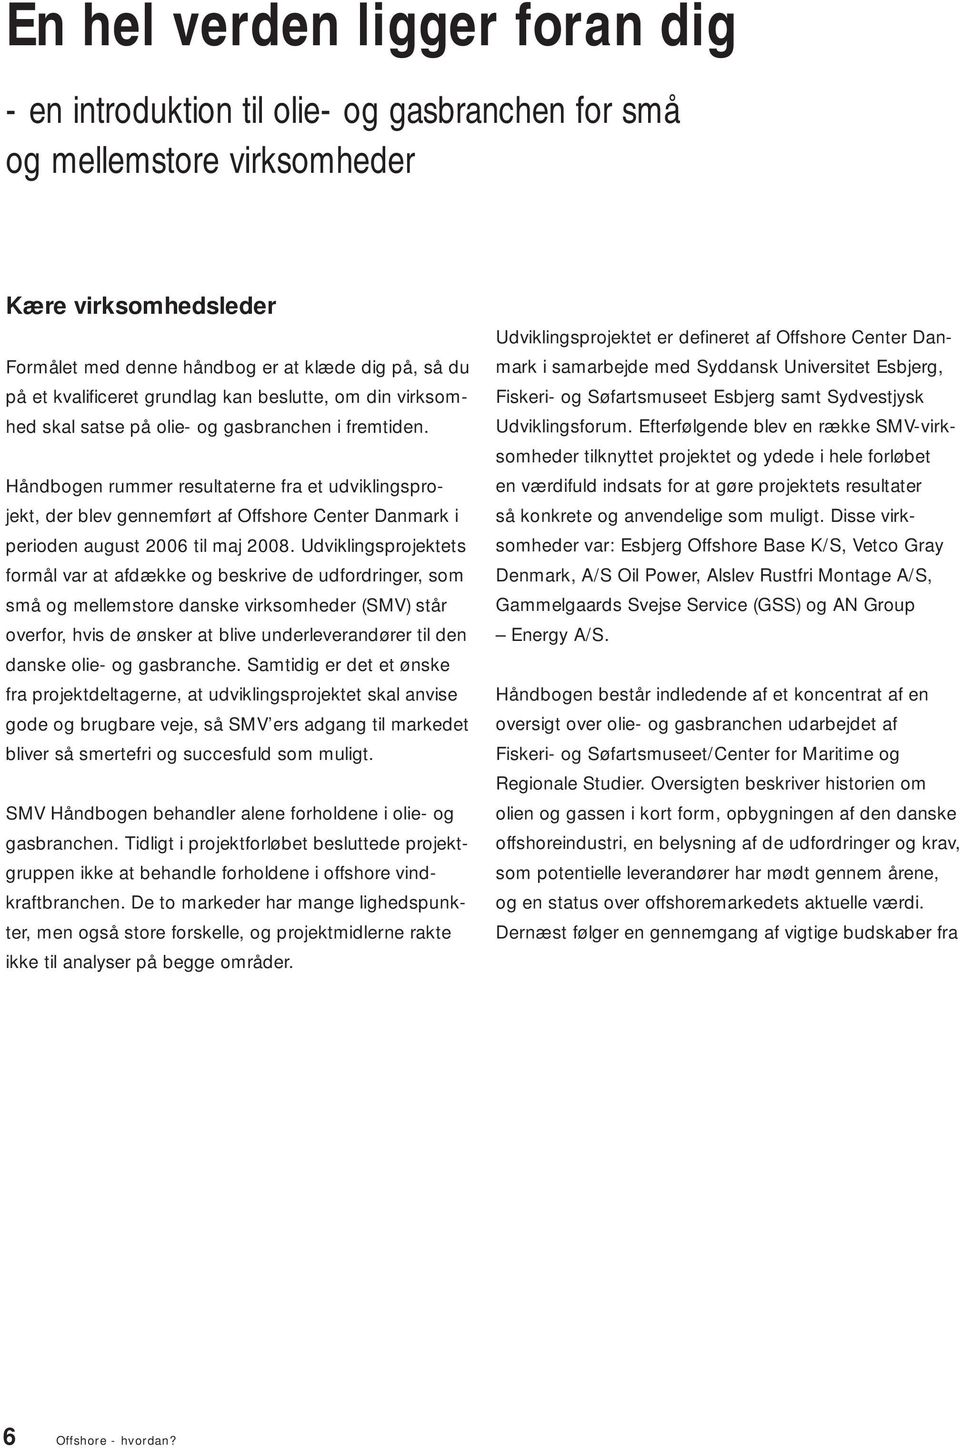 Håndbogen rummer resultaterne fra et udviklingsprojekt, der blev gennemført af Offshore Center Danmark i perioden august 2006 til maj 2008.